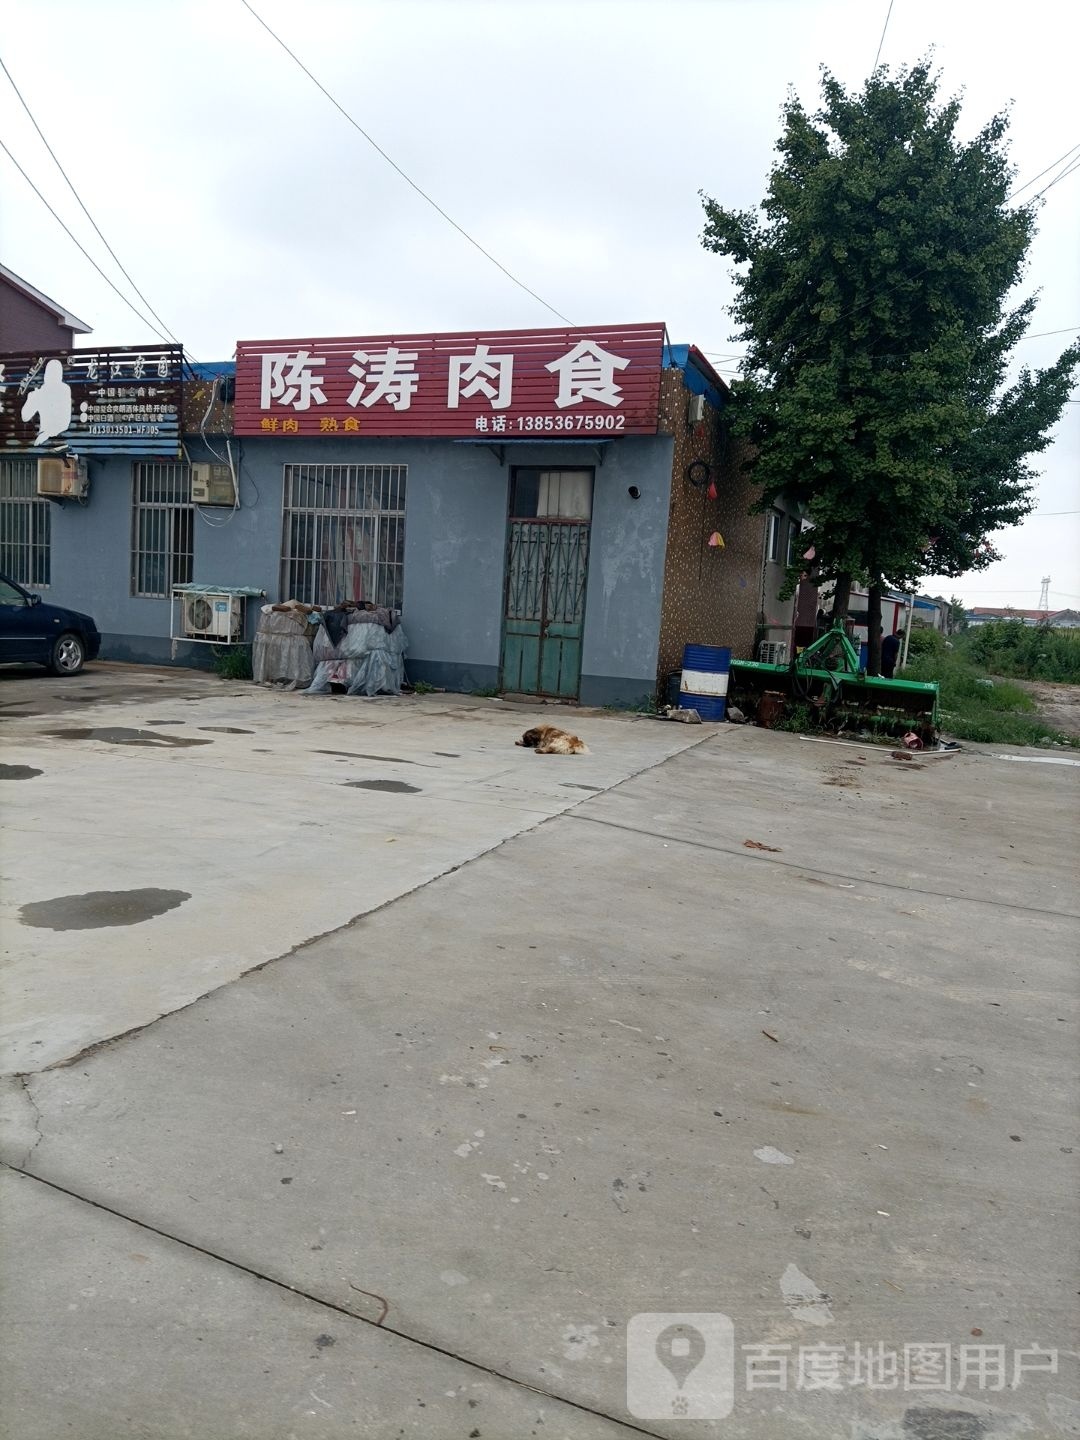 陈涛肉食店